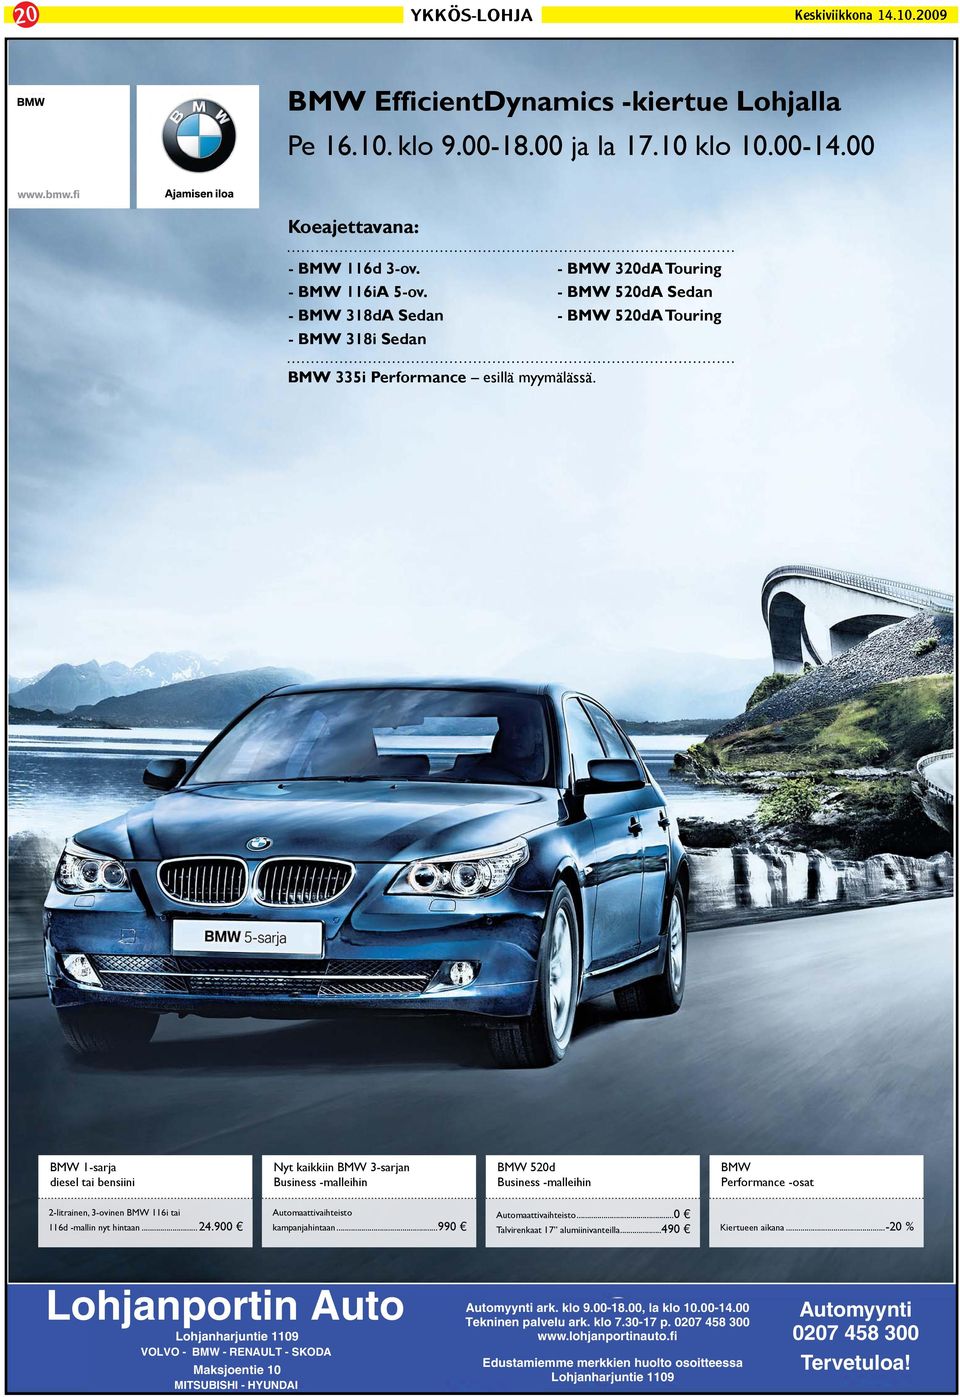 BMW 1-sarja diesel tai bensiini Nyt kaikkiin BMW 3-sarjan Business -malleihin BMW 520d Business -malleihin BMW Performance -osat 2-litrainen, 3-ovinen BMW 116i tai 116d -mallin nyt hintaan...24.